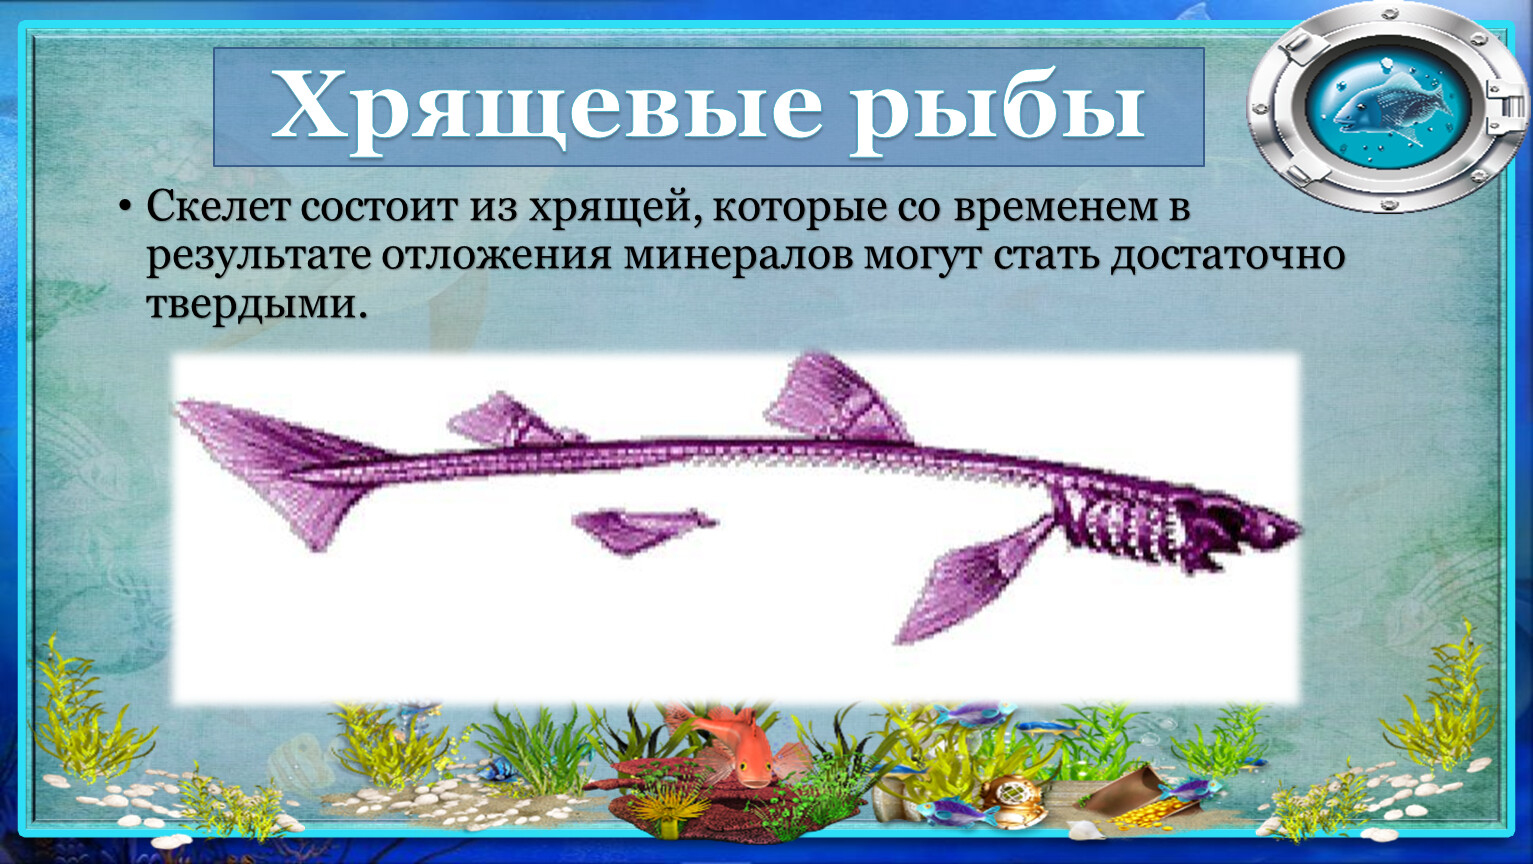 Скелет хрящевых рыб состоит из